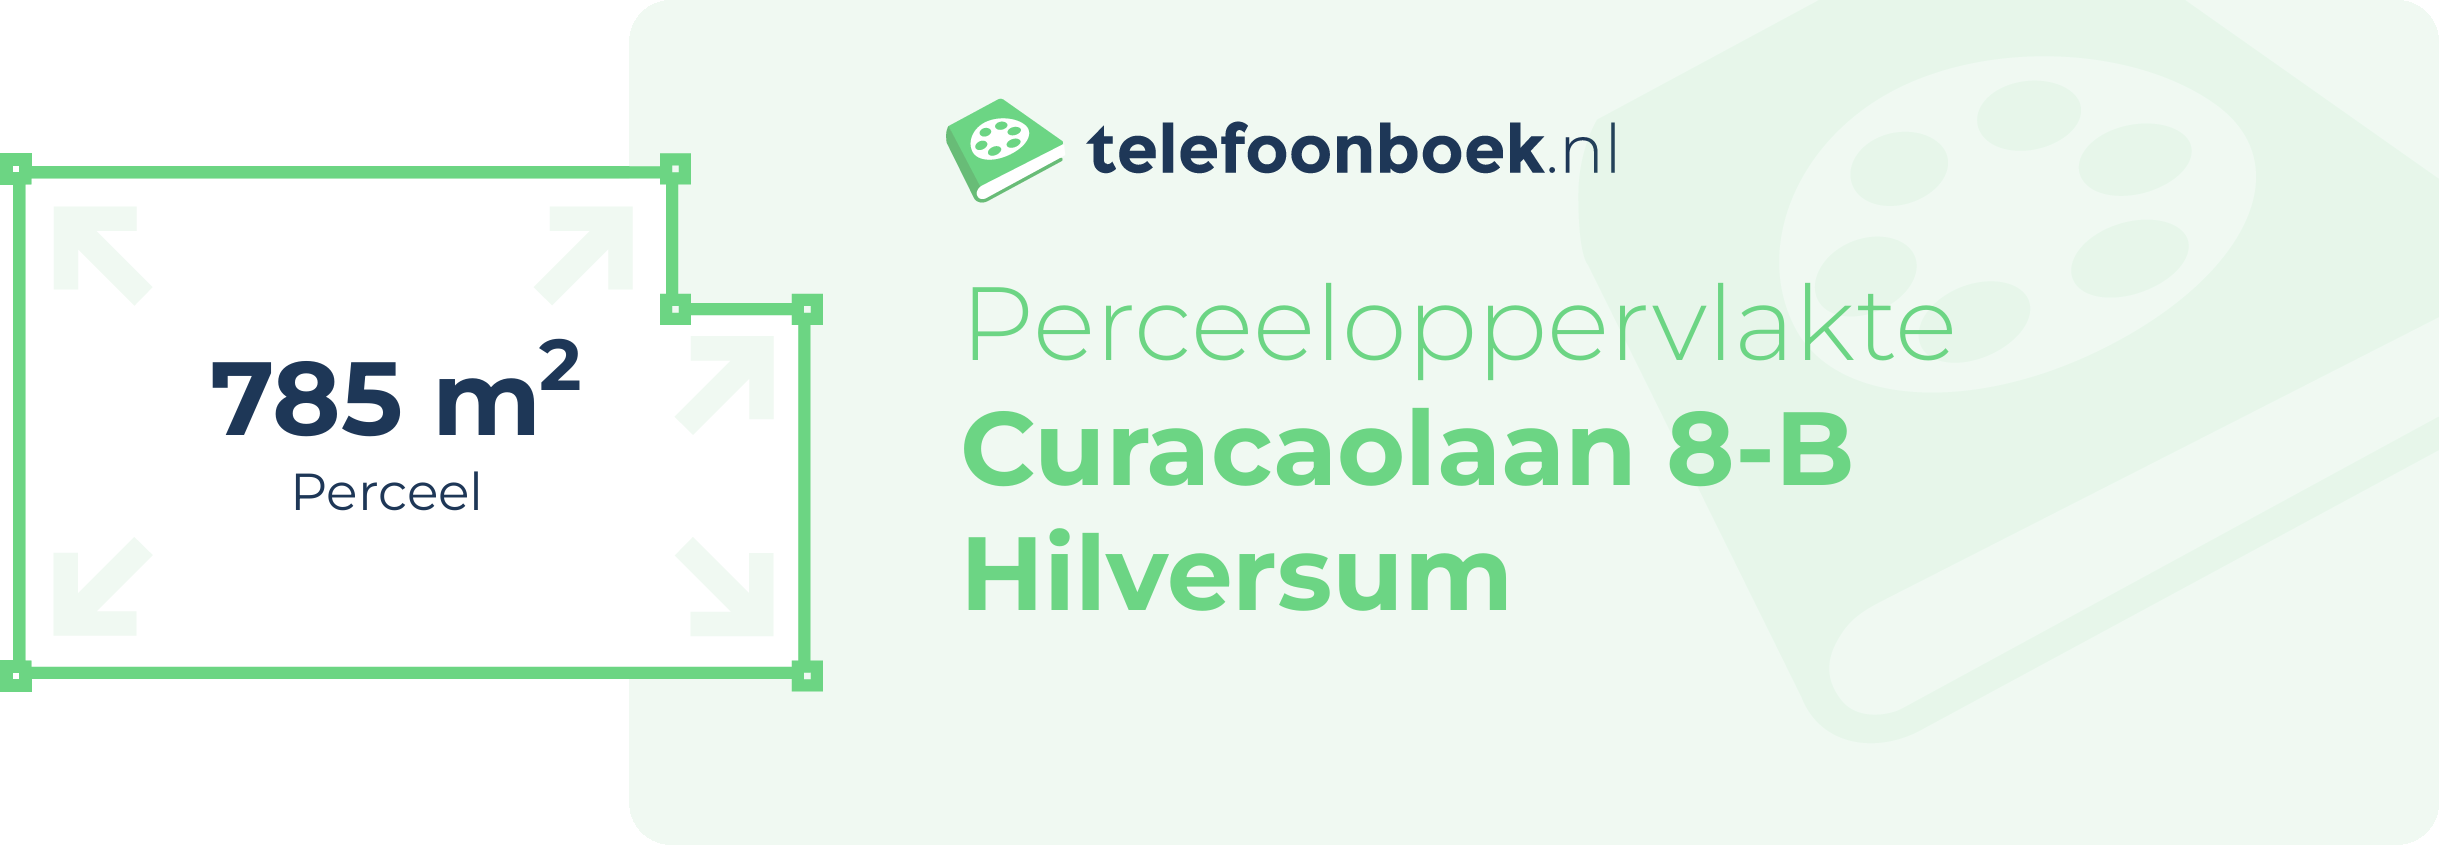 Perceeloppervlakte Curacaolaan 8-B Hilversum